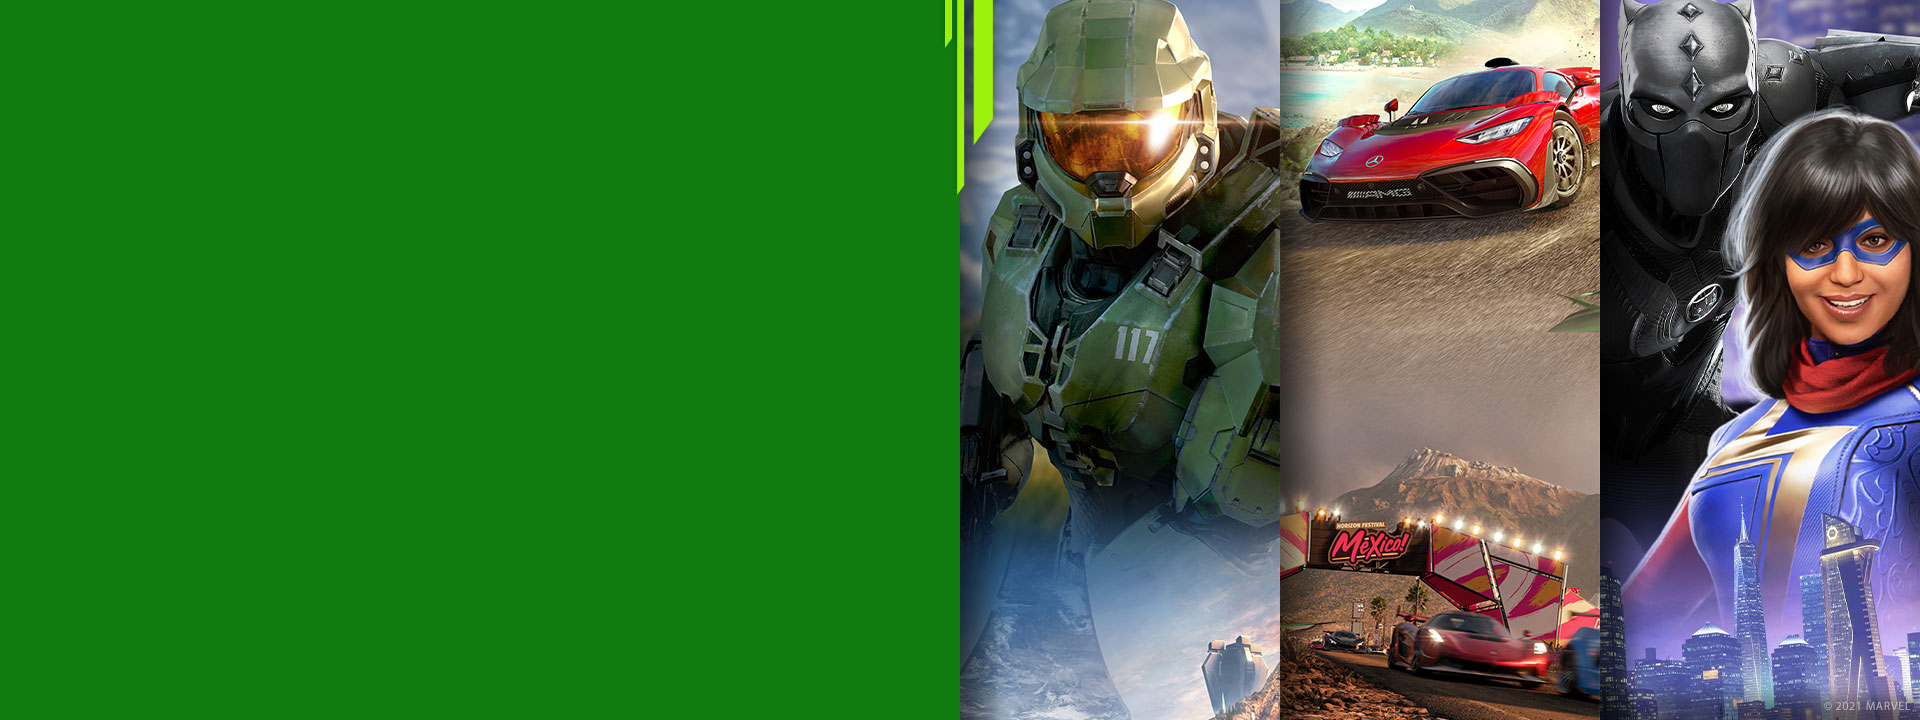 Vue de face de différents personnages des jeux Xbox Halo Infinite, Forza Horizon 5 et Marvelʼs Avengers.